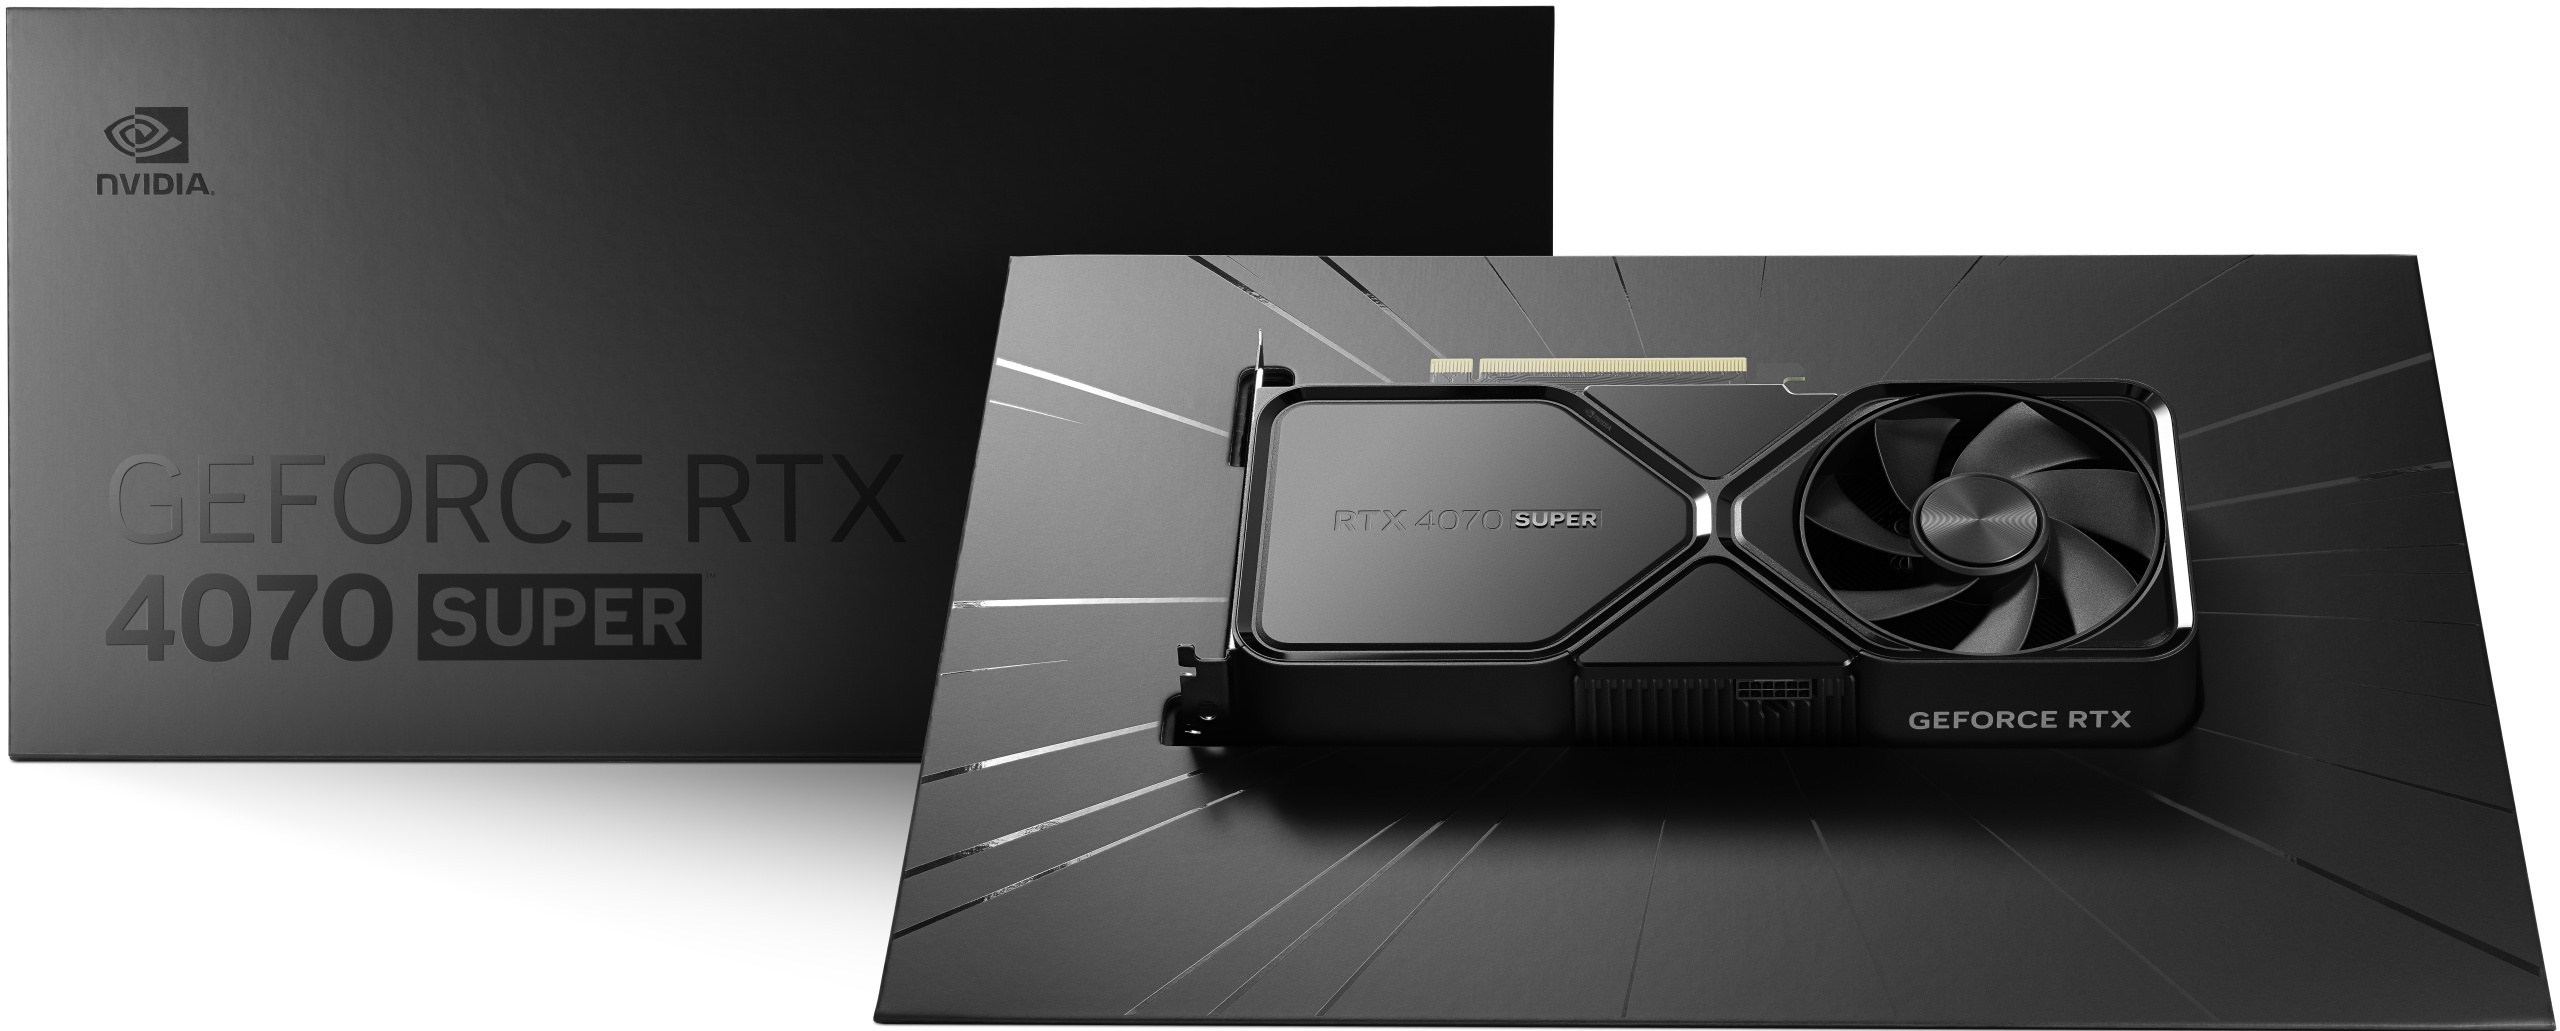 CES: NVIDIA GeForce RTX 4070 Super, RTX 4070 Ti Super and RTX 4080